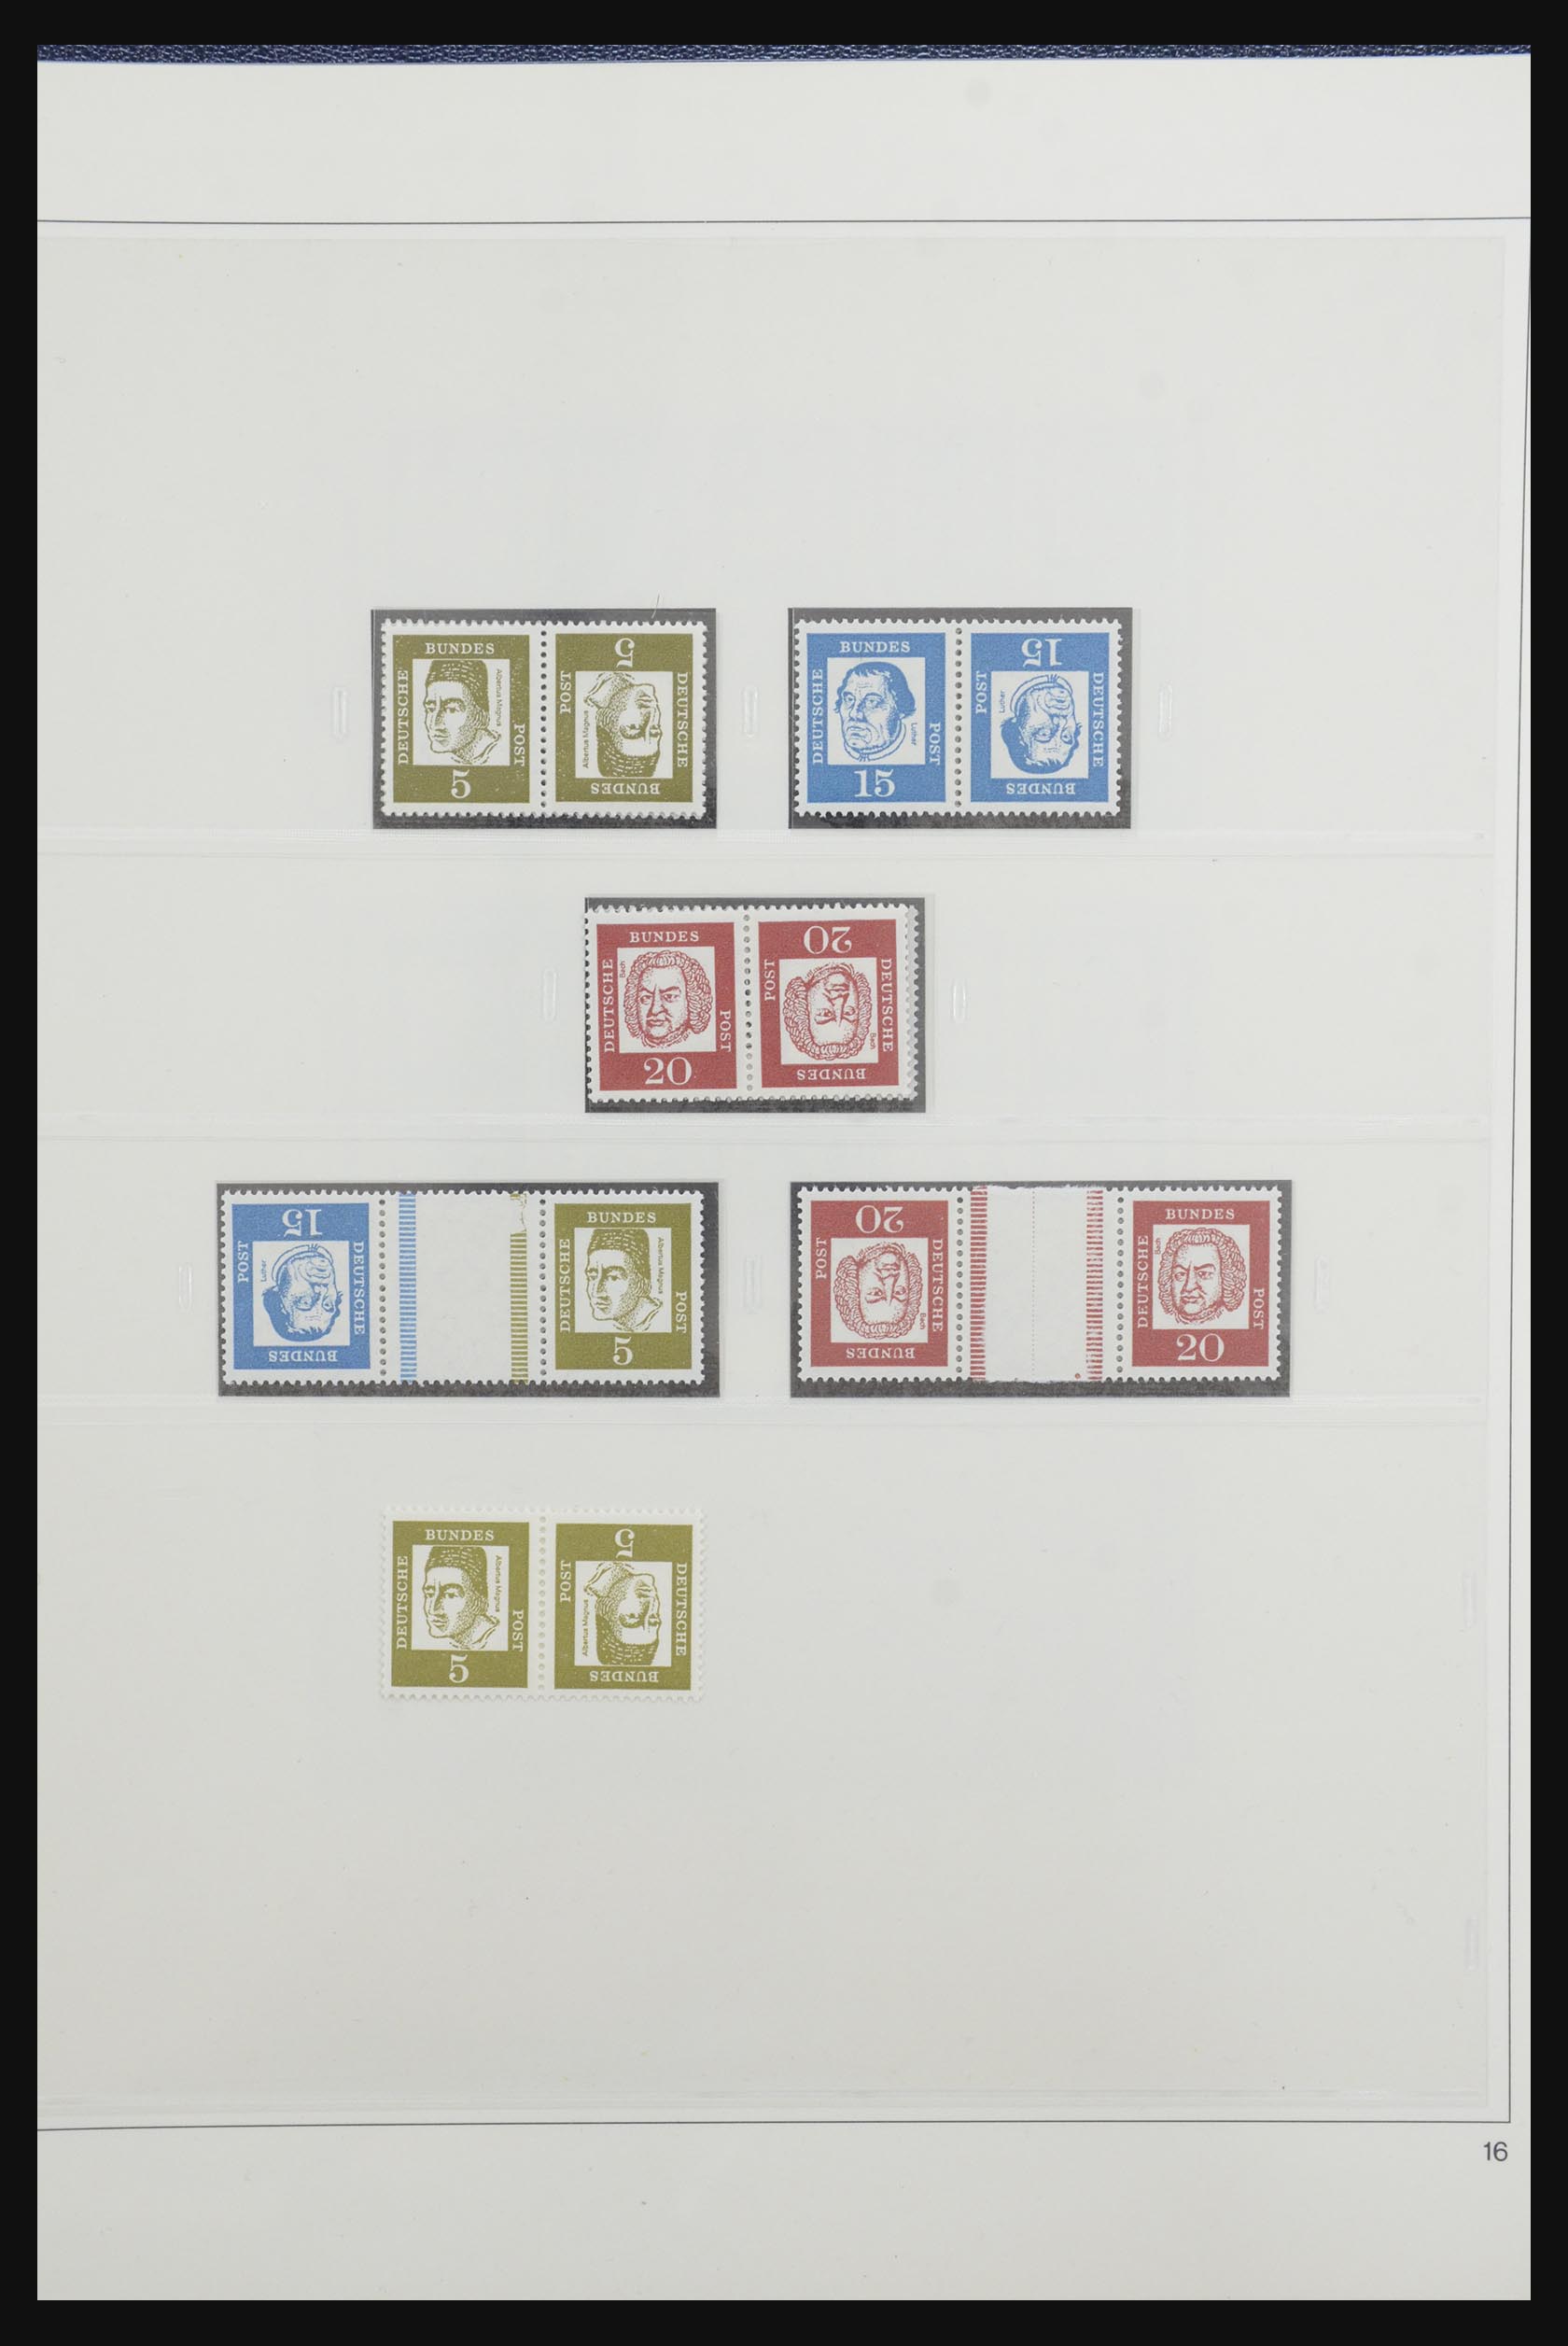 31842 020 - 31842 Bundespost combinaties 1951-2003.